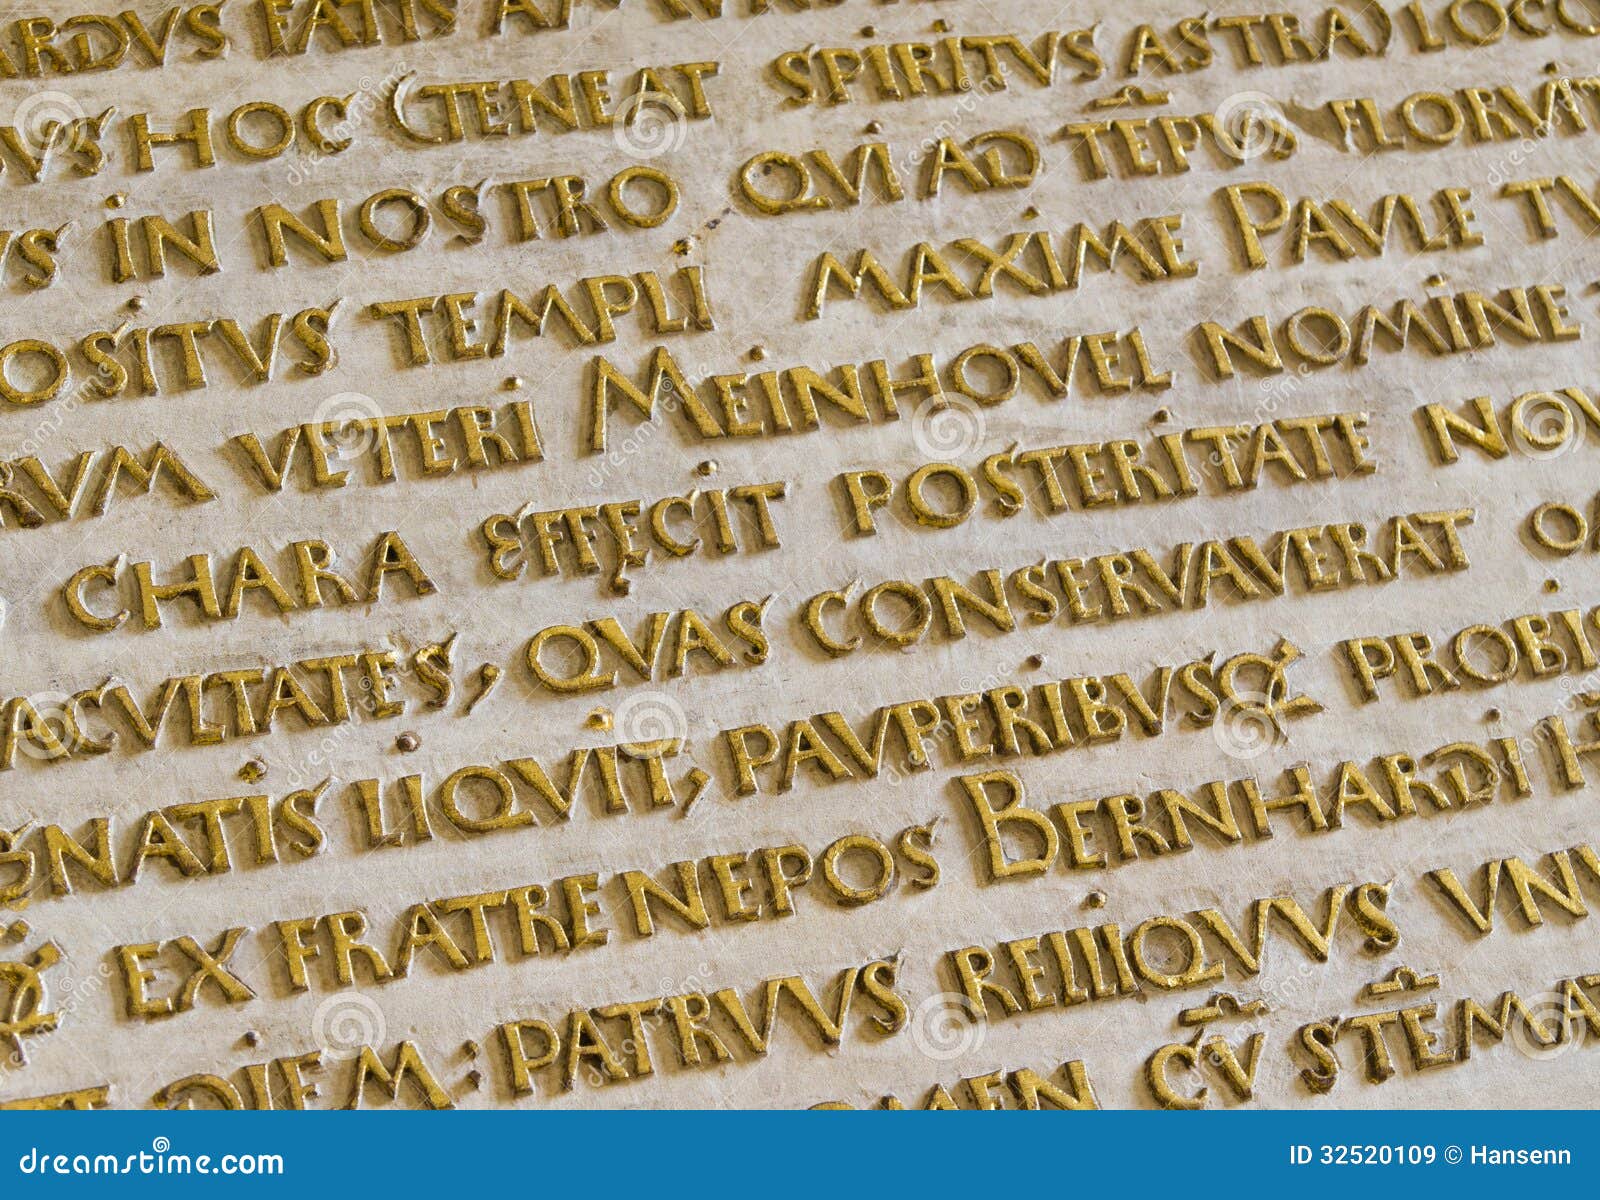 Fonkelnieuw Oude Latijnse tekst stock afbeelding. Afbeelding bestaande uit DQ-81